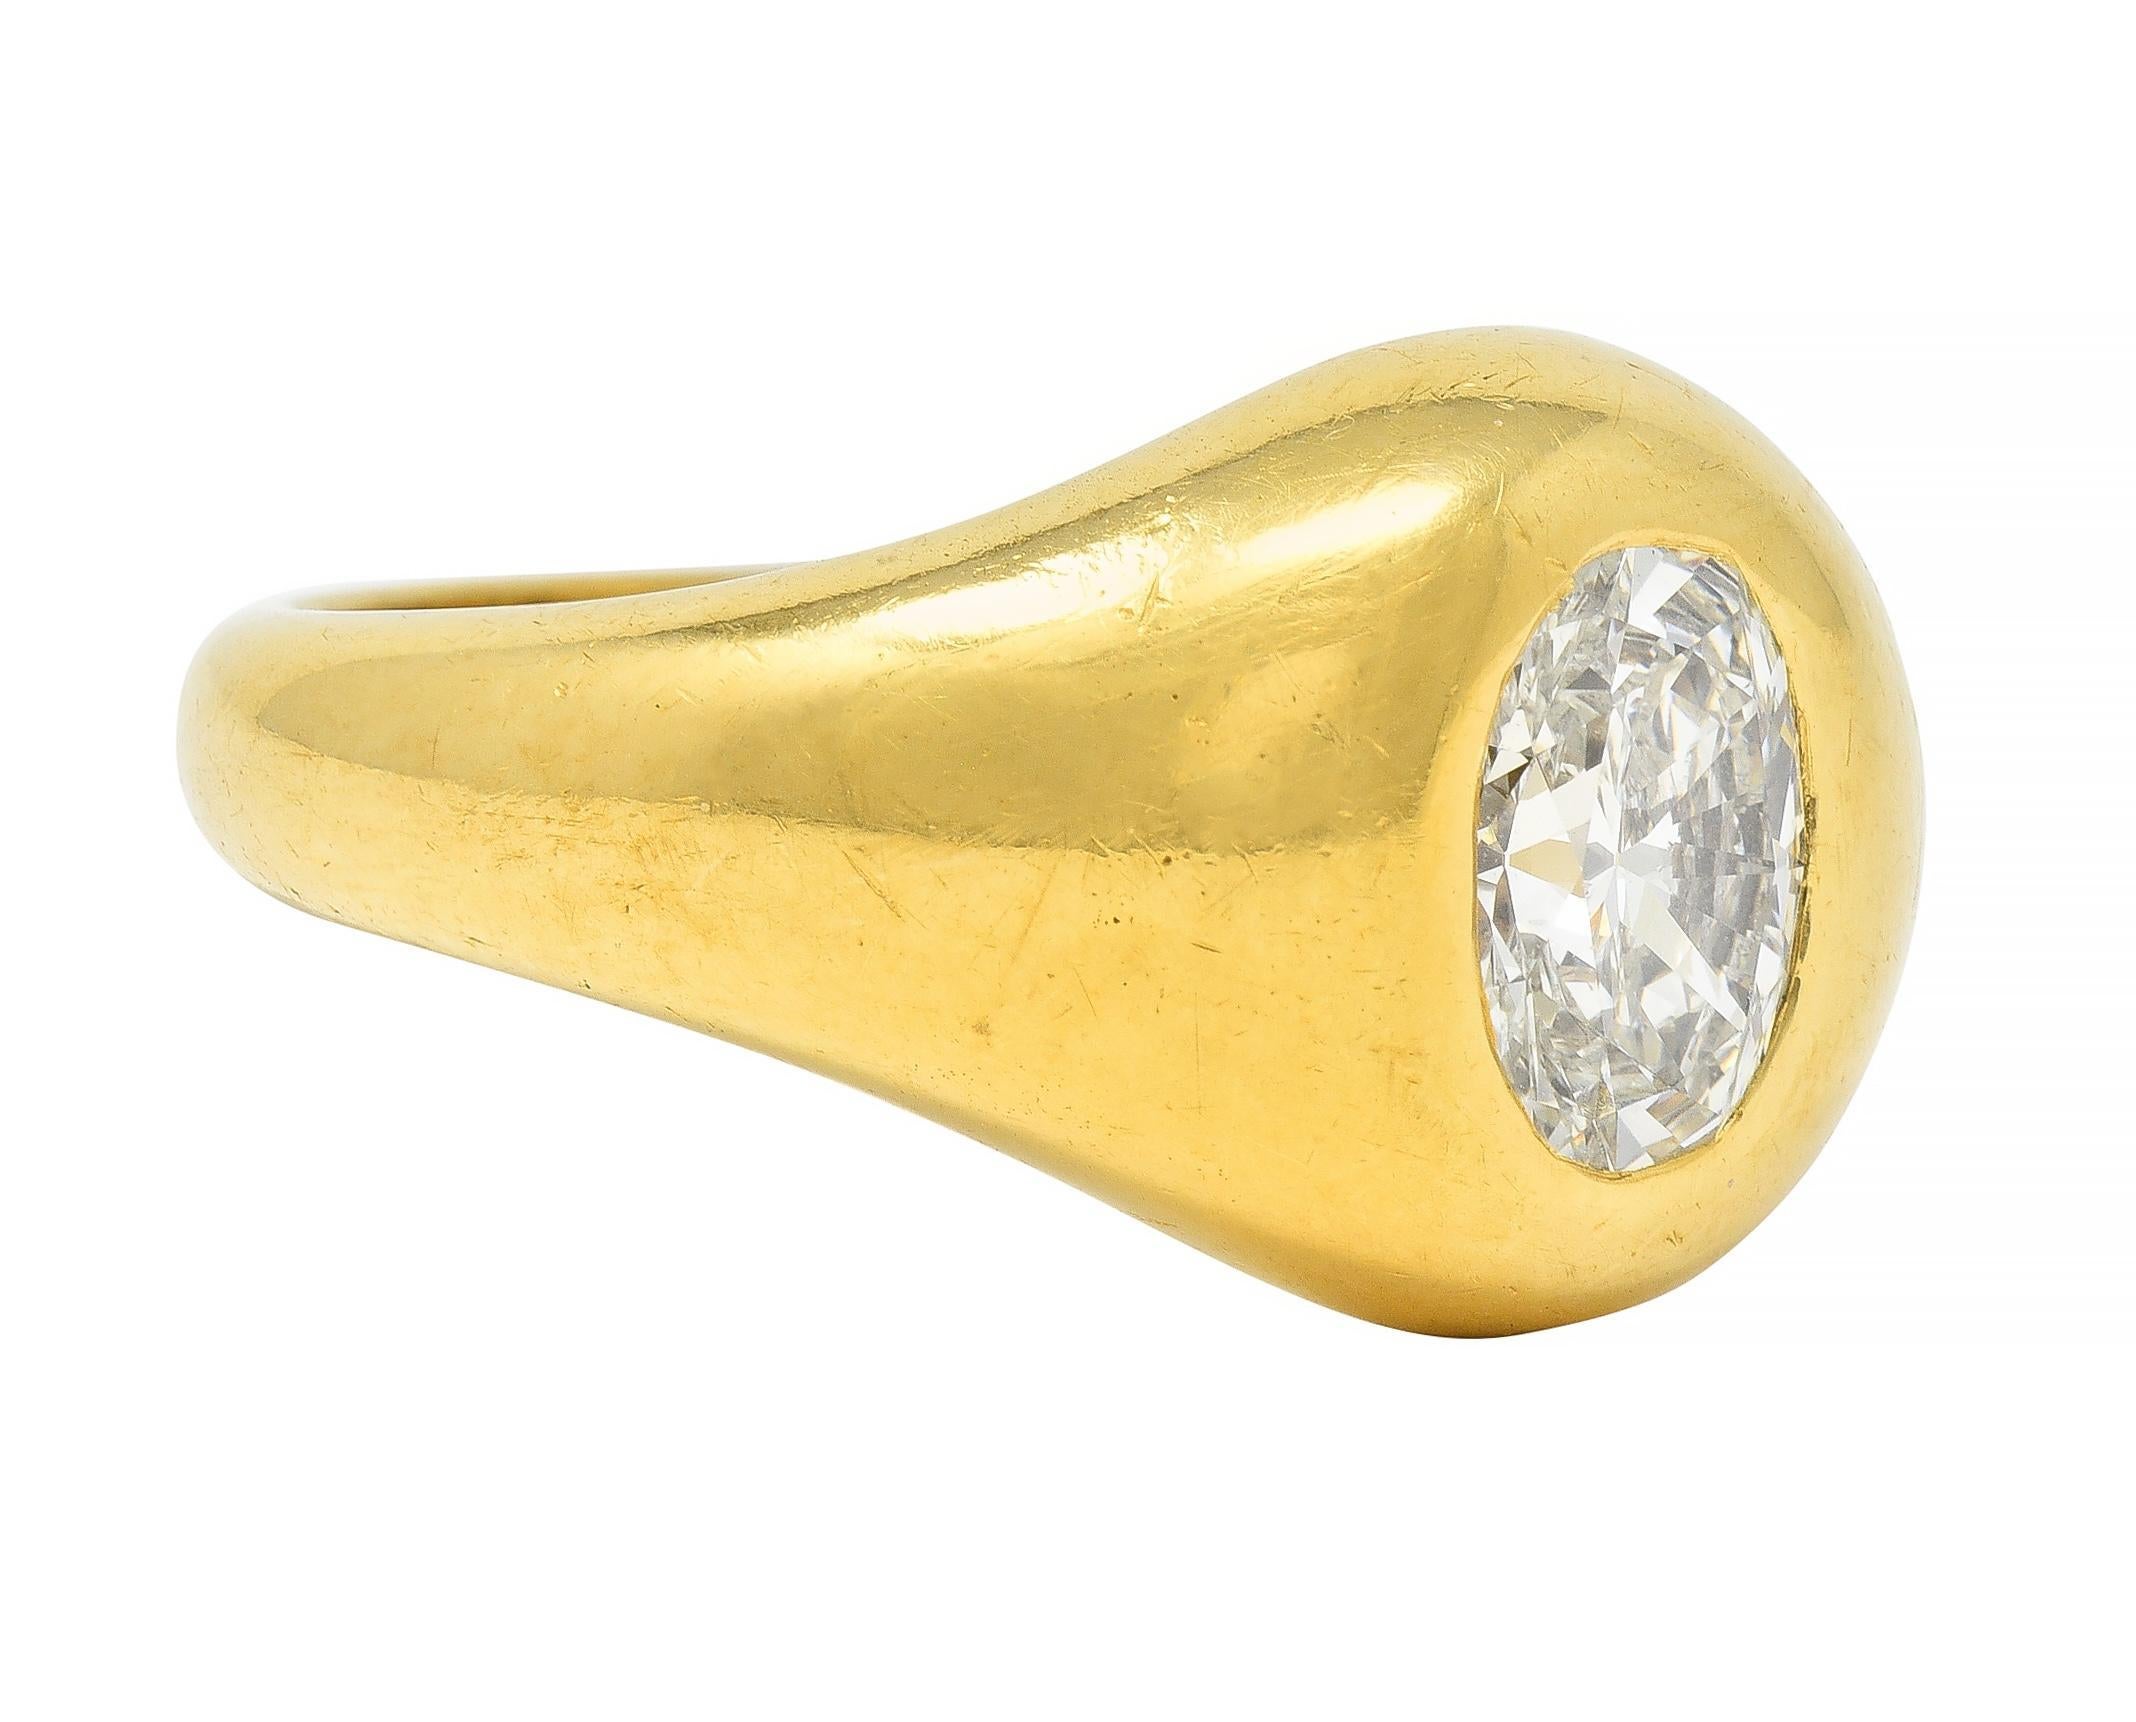 Centré sur un diamant de taille ovale pesant environ 1,22 carats - couleur F et pureté VS2
Encastré dans un entourage sinueux de forme ovale 
Avec des épaules et un profil arrondis 
Testé comme de l'or 18 carats 
Numéroté et entièrement signé pour